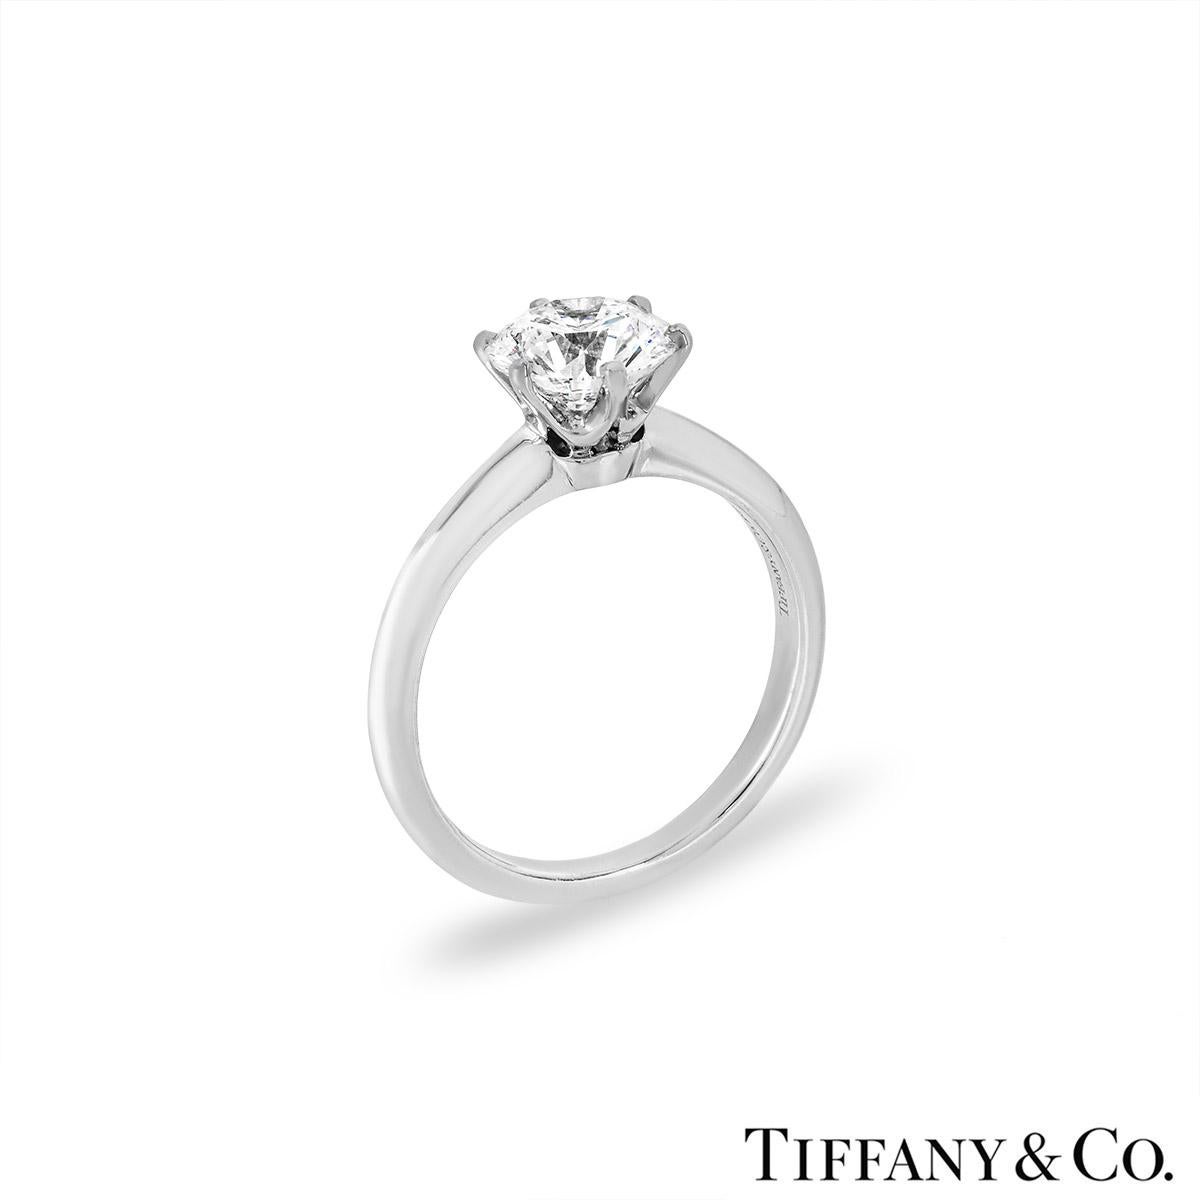 Une magnifique bague de fiançailles en diamant Tiffany & Co. de la collection Tiffany Setting Band. La bague est composée d'un diamant rond de taille brillant, serti en griffe, d'un poids de 1,53 ct, de couleur E et de pureté VVS2. La bague est